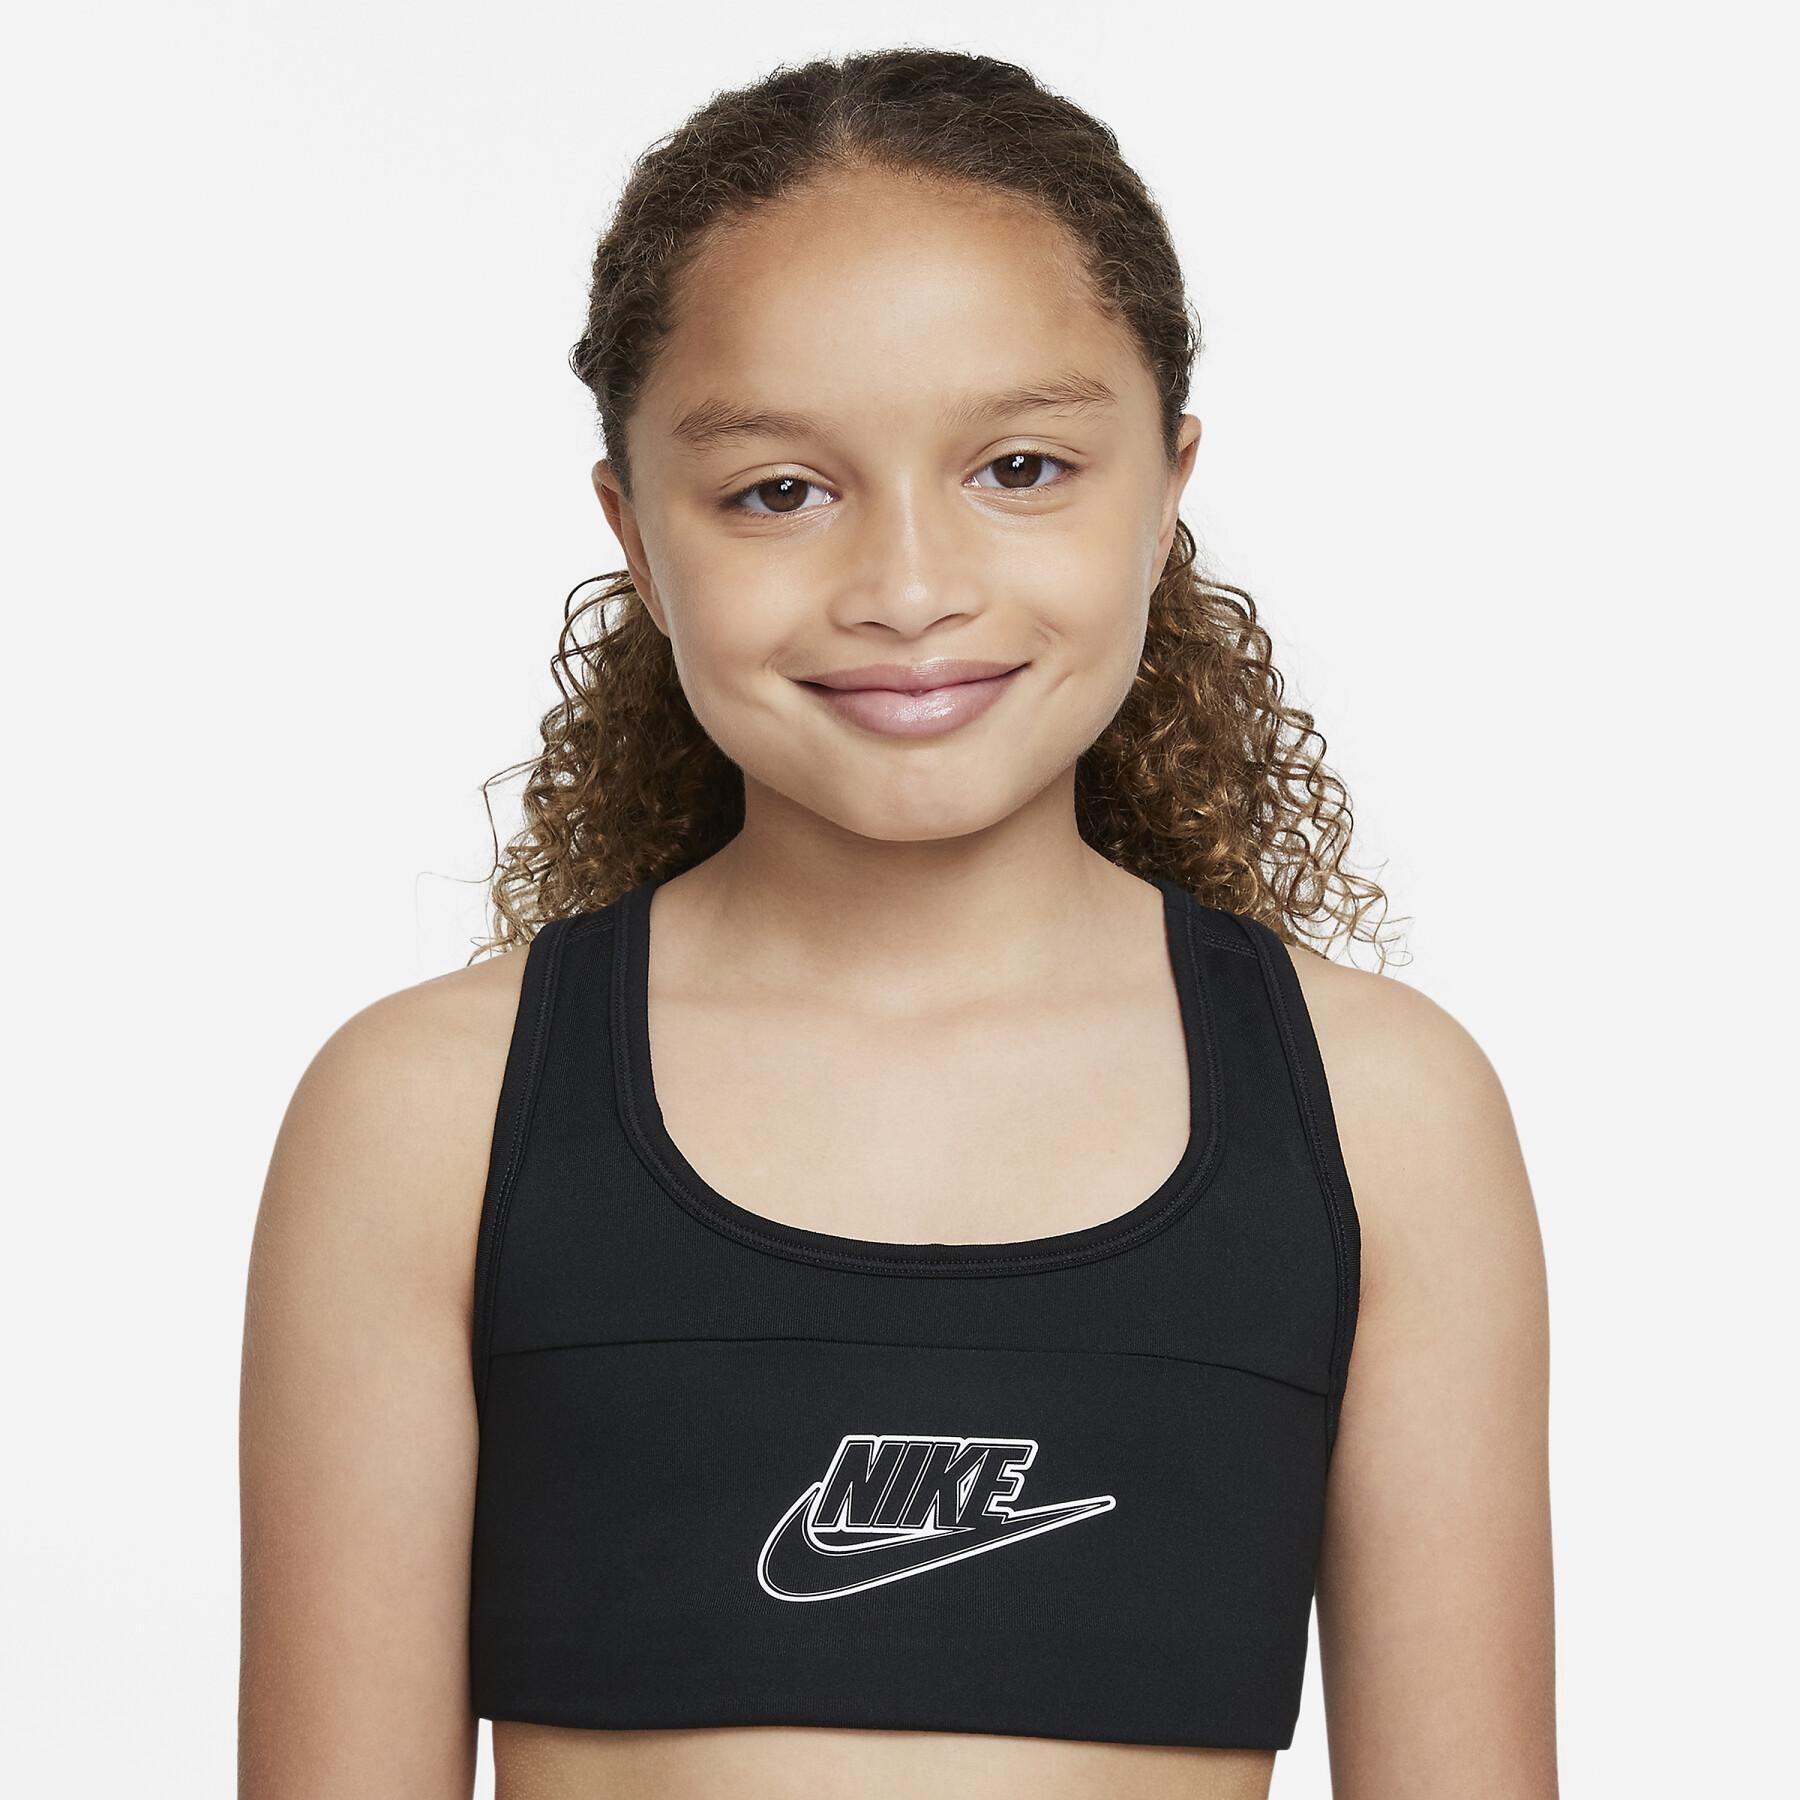 Meisjesbeha Nike Swsh Futura